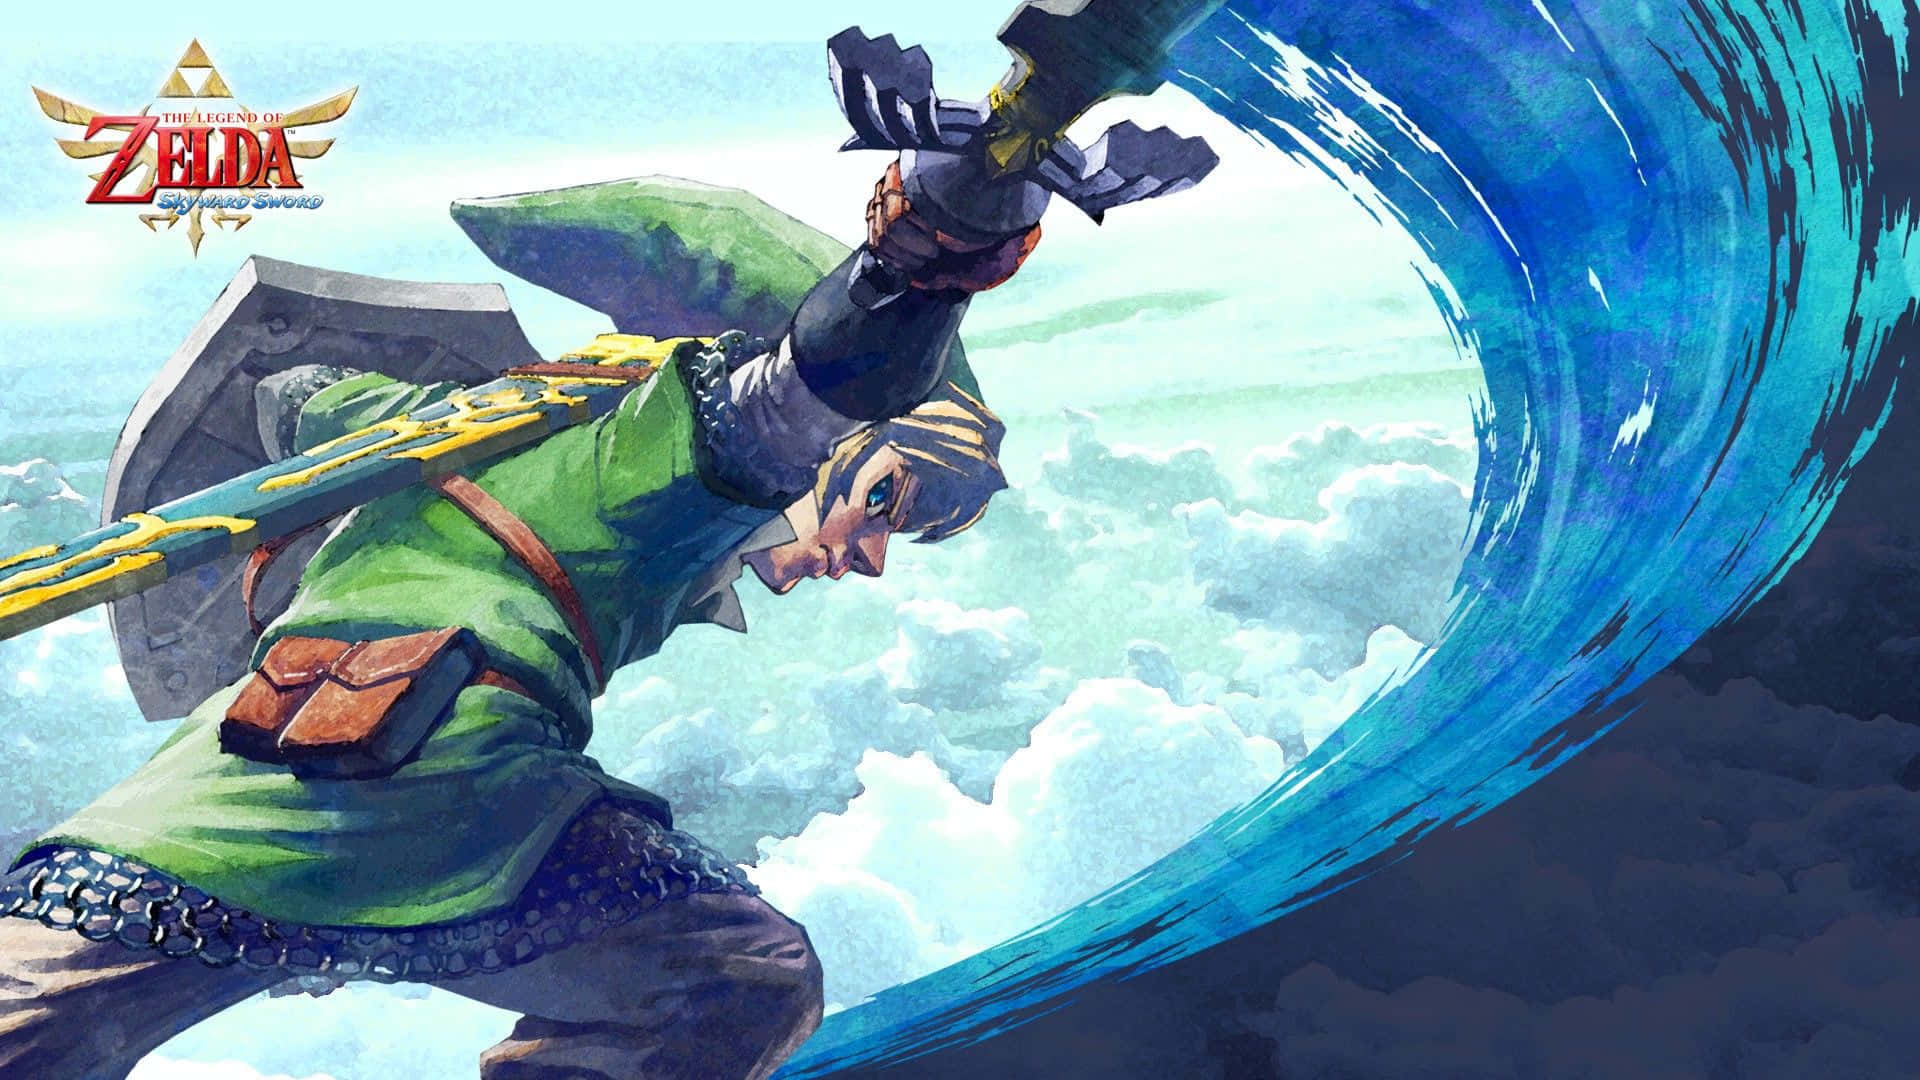 Link flying on a Loftwing in The Legend of Zelda: Skyward Sword Wallpaper